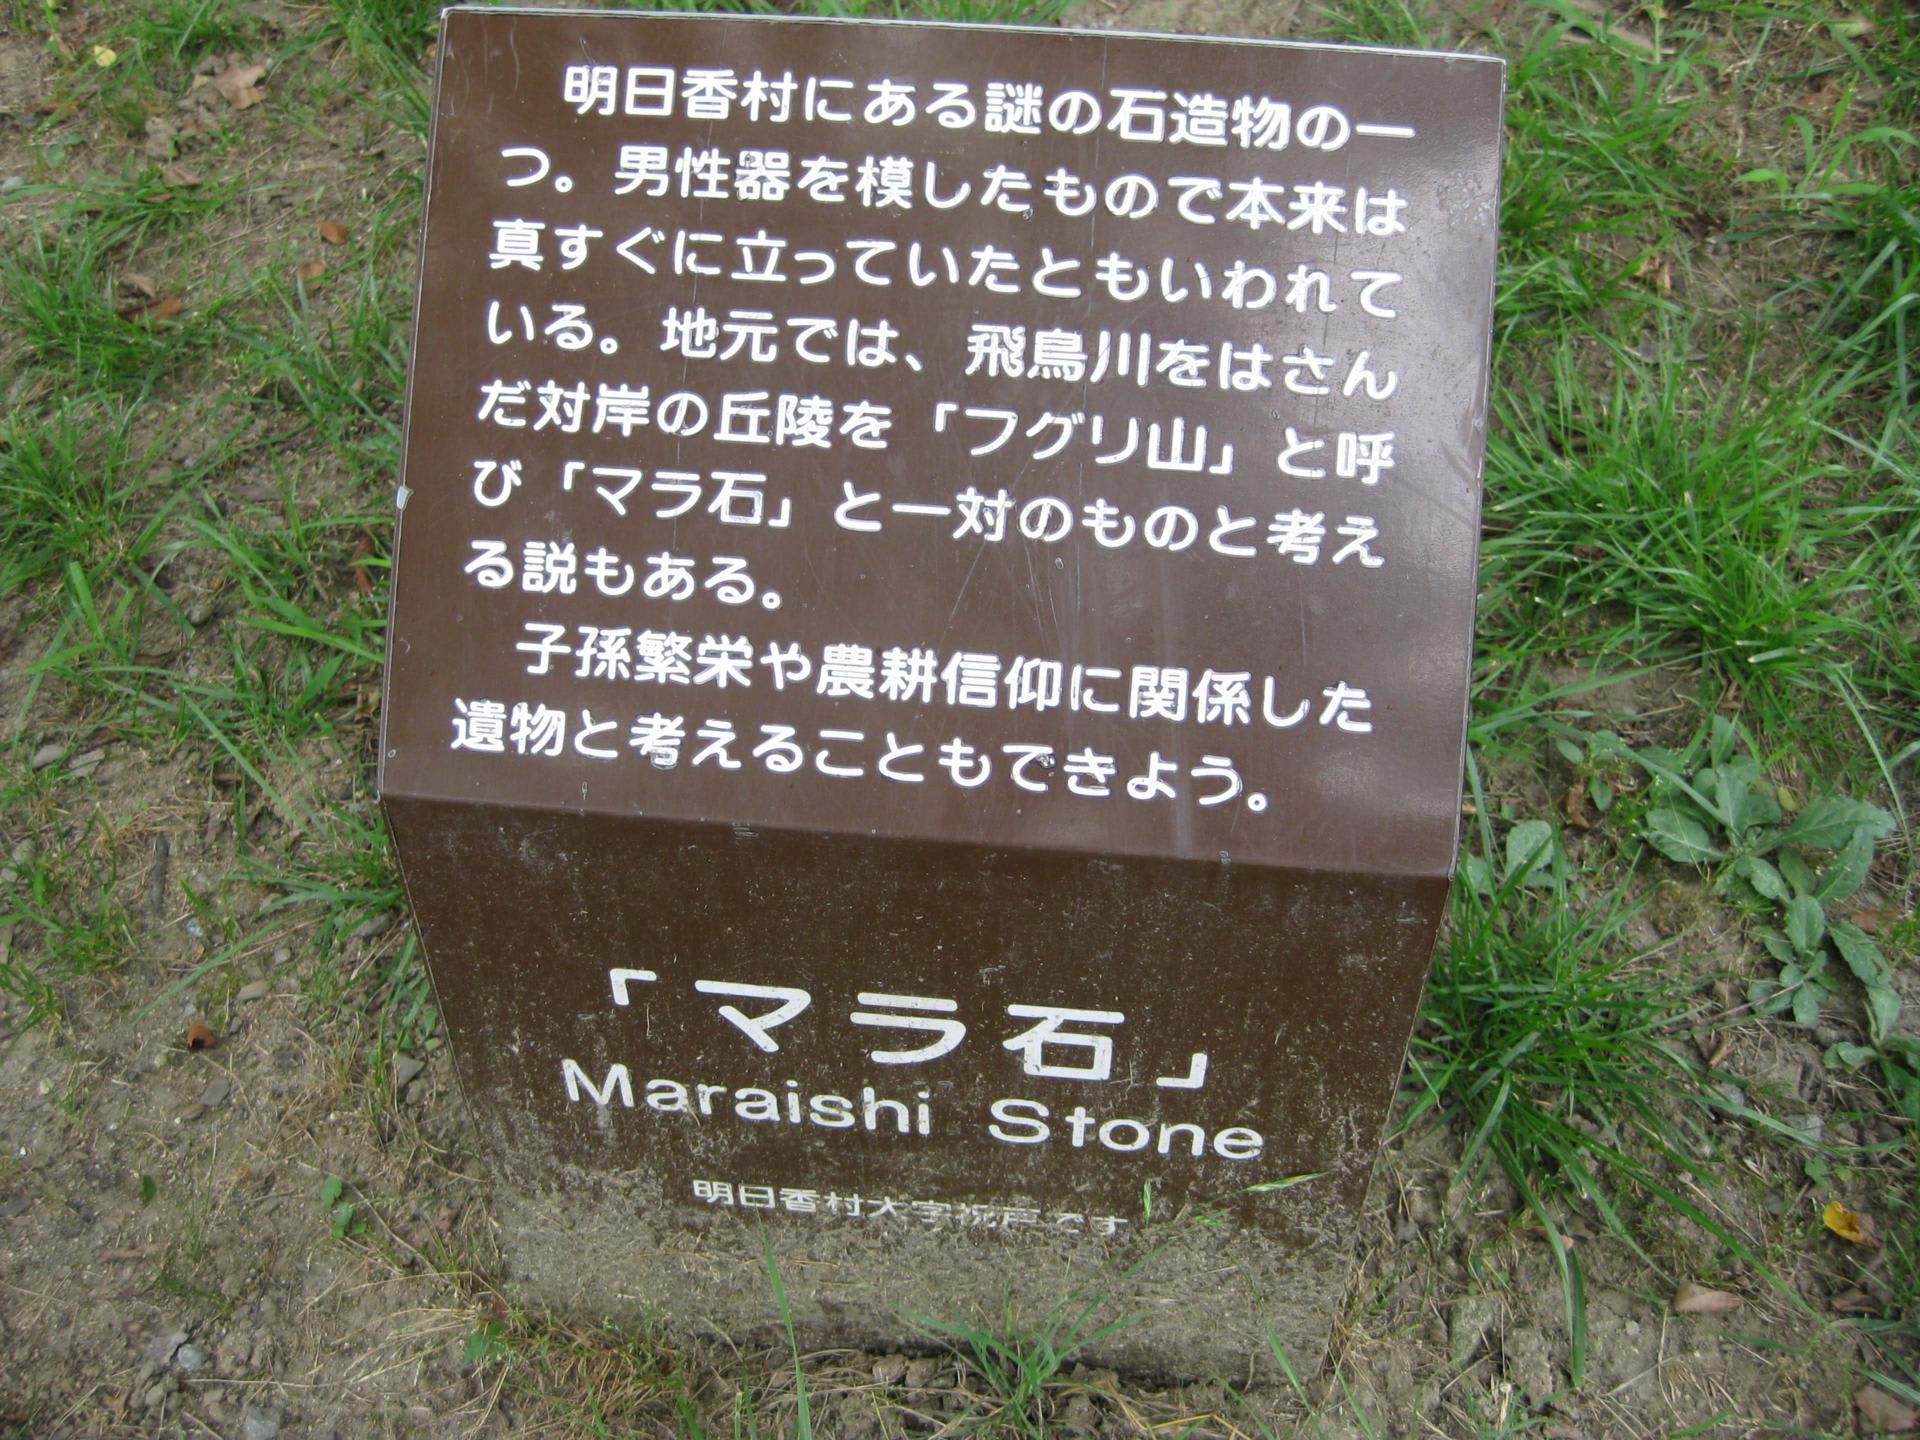 二面石とマラ石 明日香村を訪ねて Vol 9 こどもたちの未来へ 311被災者支援と国際協力